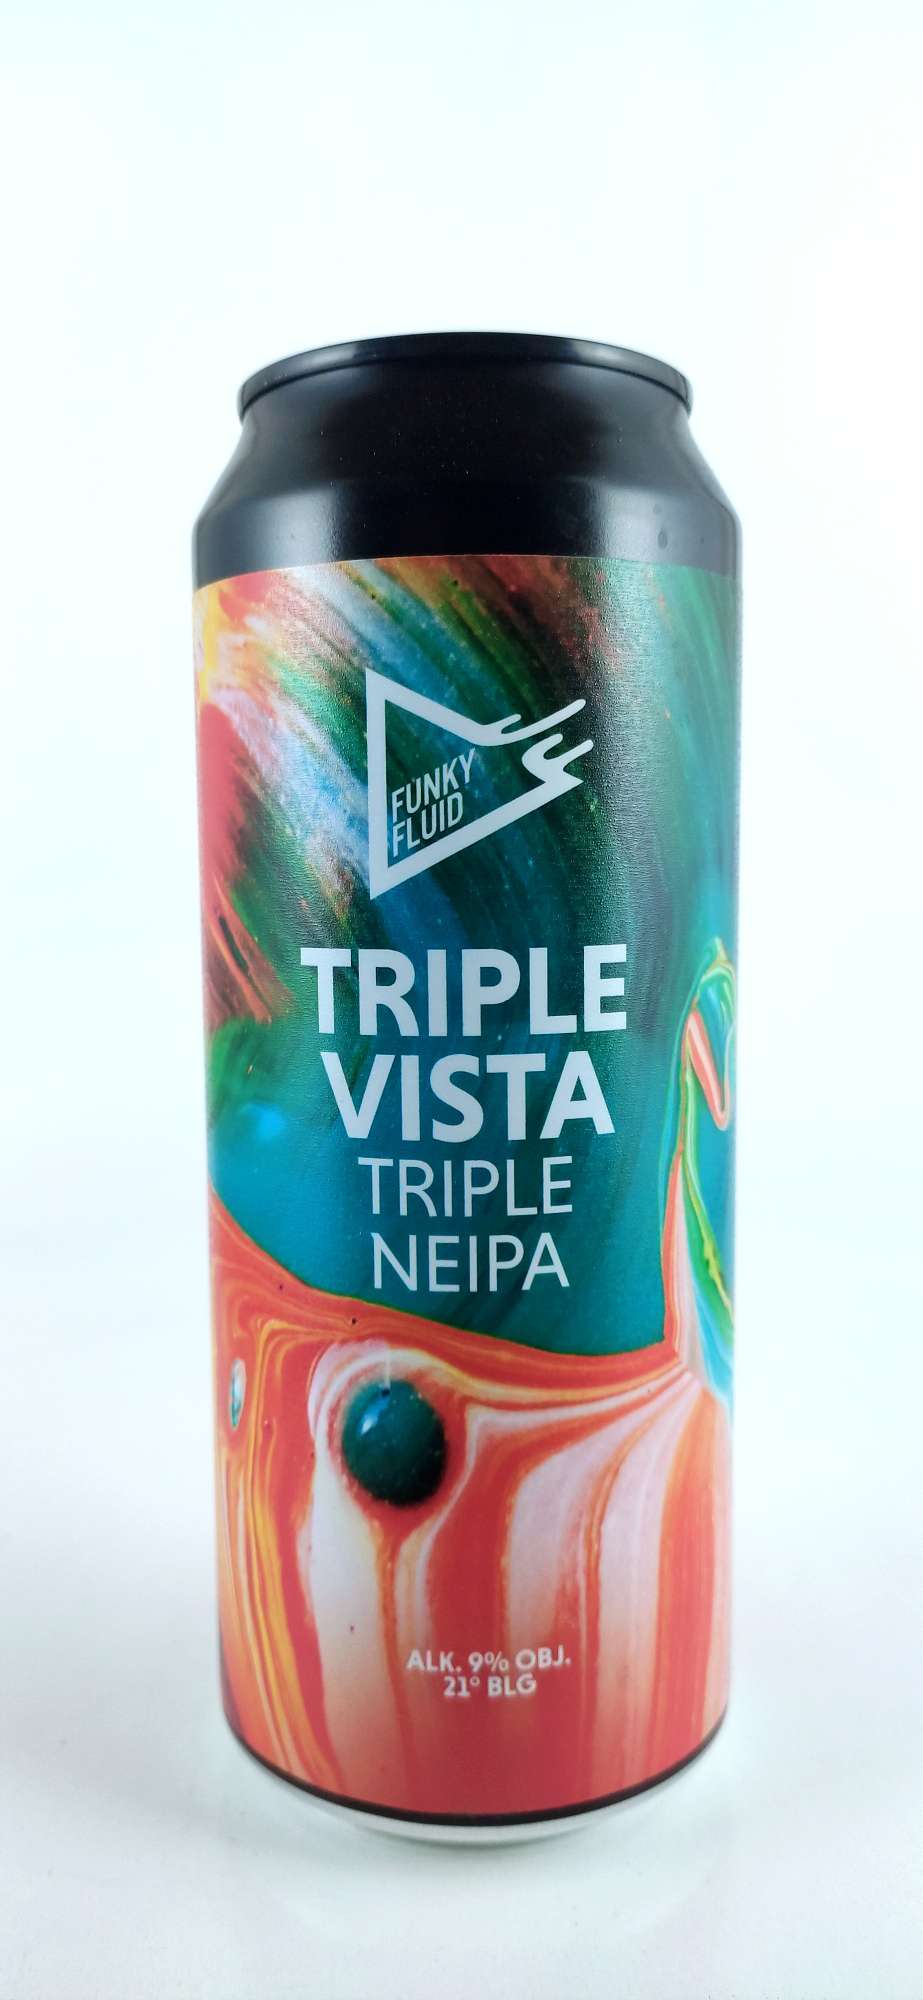 Funky Fluid Triple Vista Triple NEIPA 21°